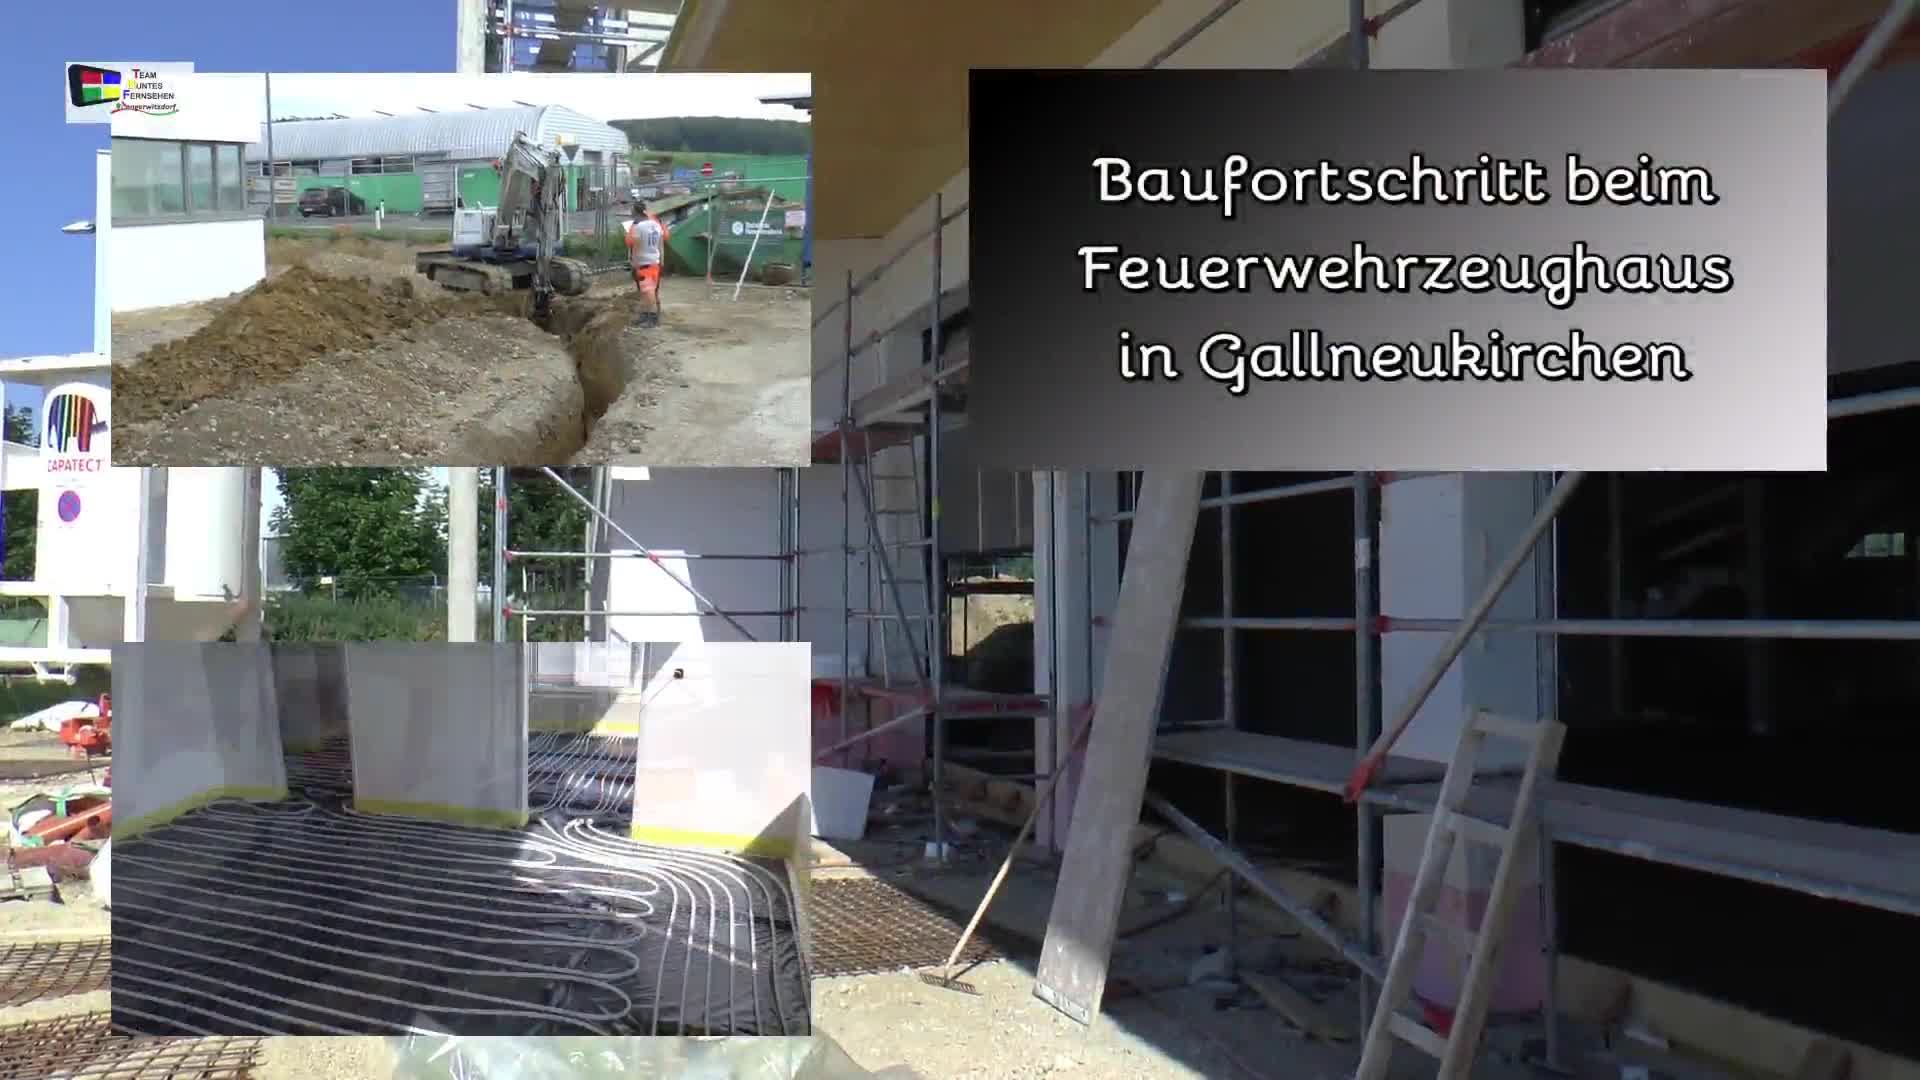 Baufortschritt - FF-Zeughaus Gallneukirchen